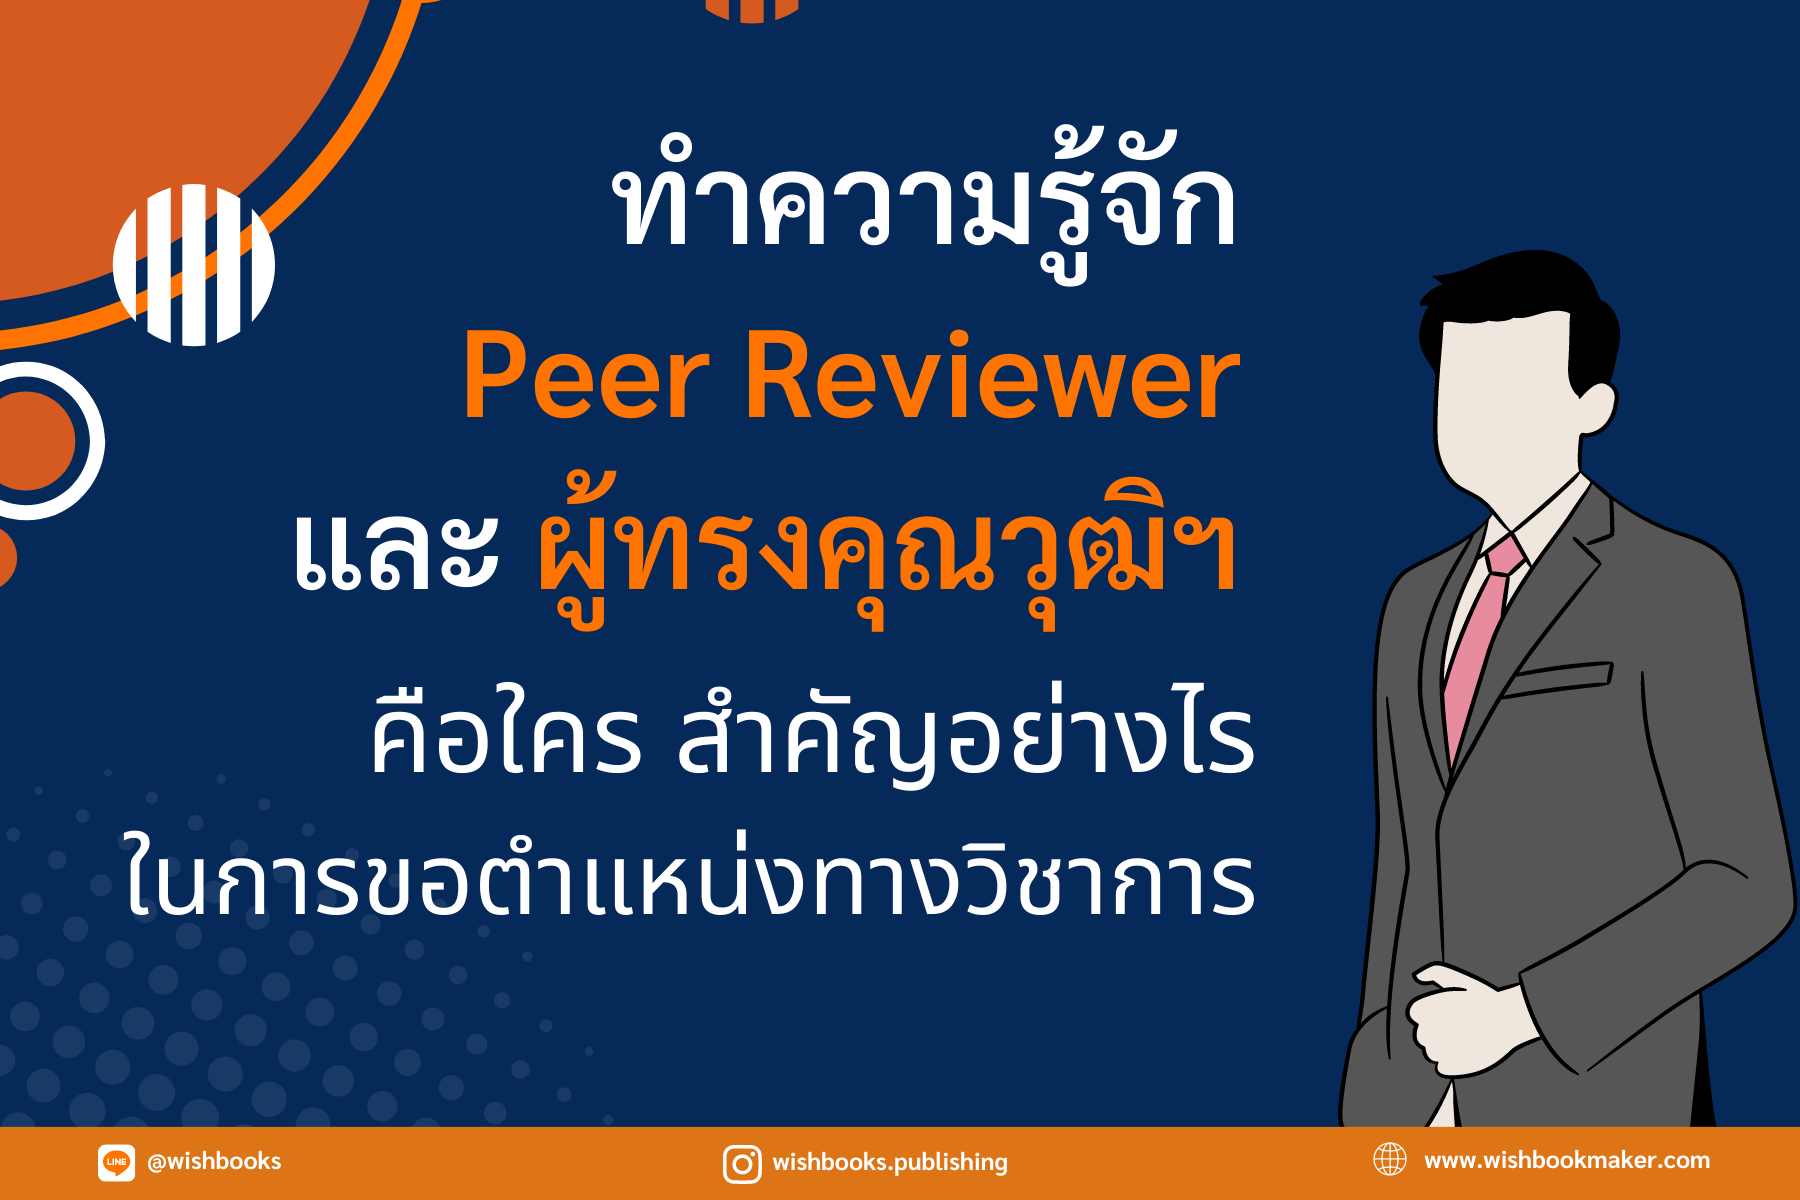 ทำความรู้จัก Peer Reviewer และผู้ทรงคุณวุฒิฯ